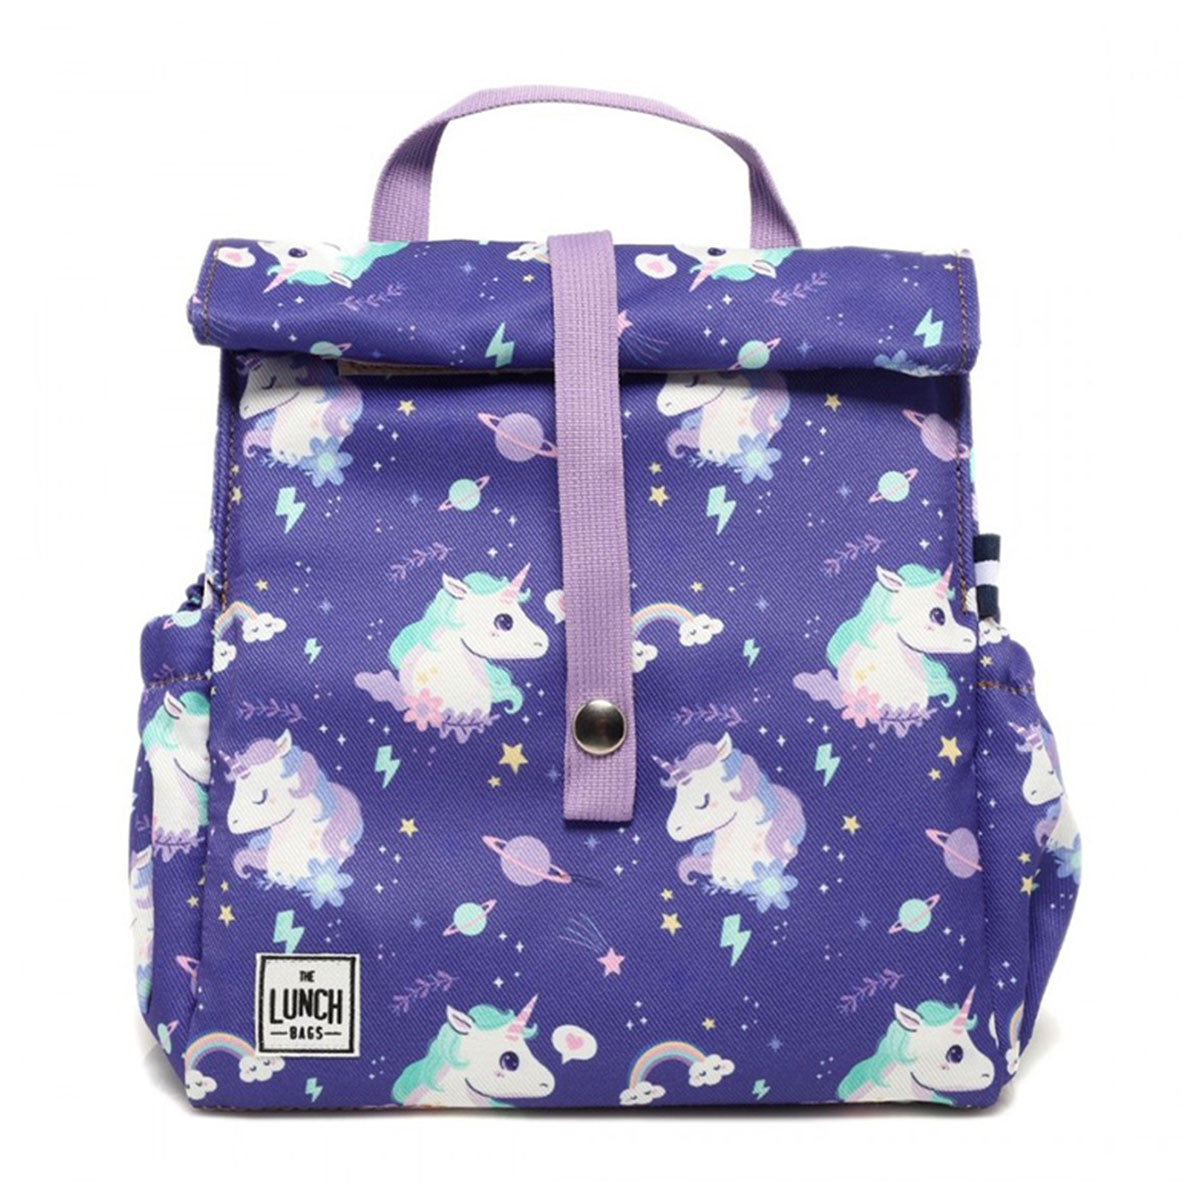 Ισοθερμική Τσάντα Φαγητού (5Lit) The Lunch Bags Original Purple Unicorn 276995